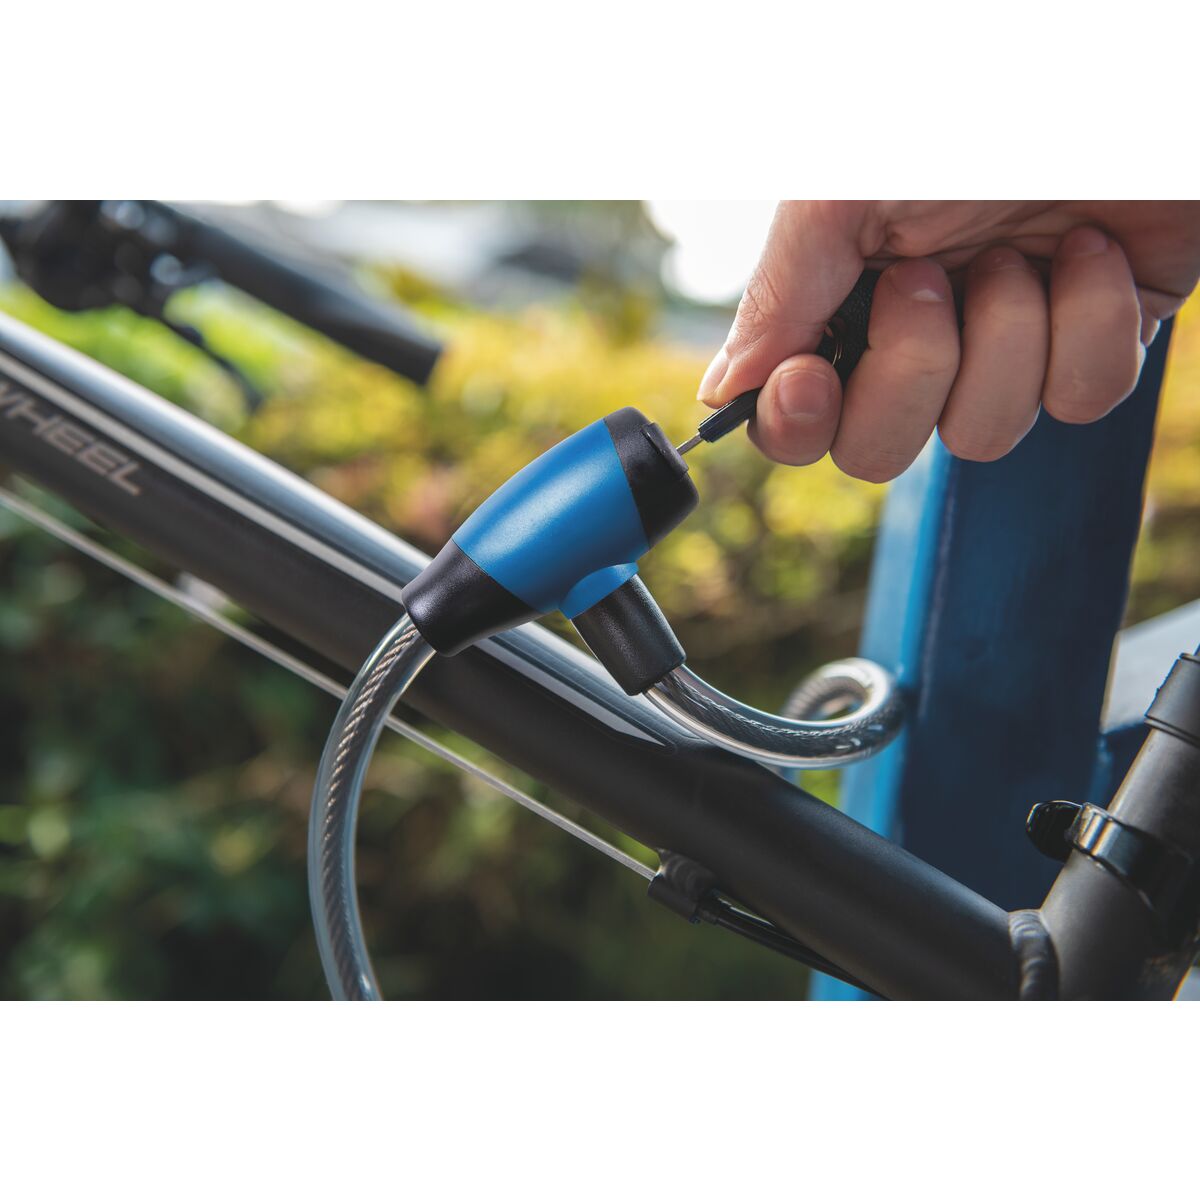 Linga candado para bicicleta - Diagonales Digital